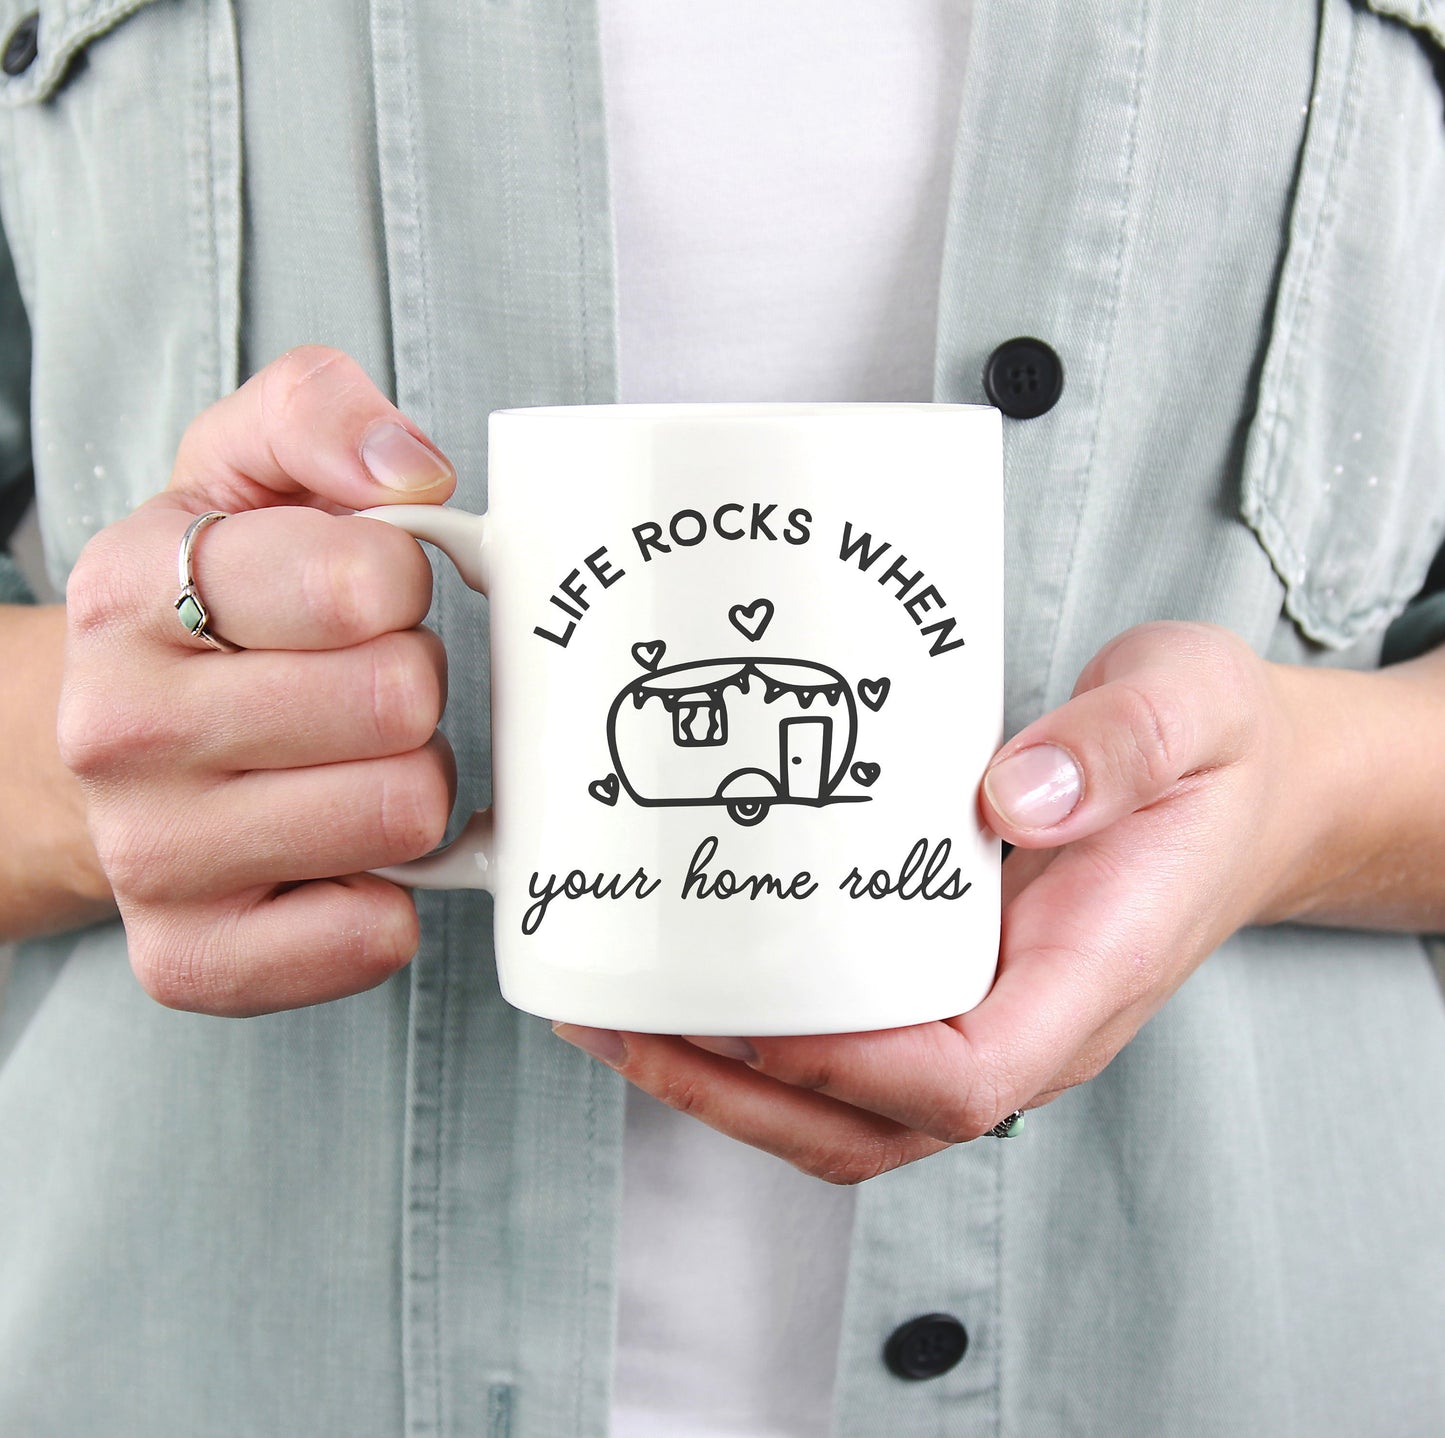 Life Rocks When Your Home Rolls Mug - Camping mug , happy camper mug , camping gift , camping mugs, campfire mug , travel mug